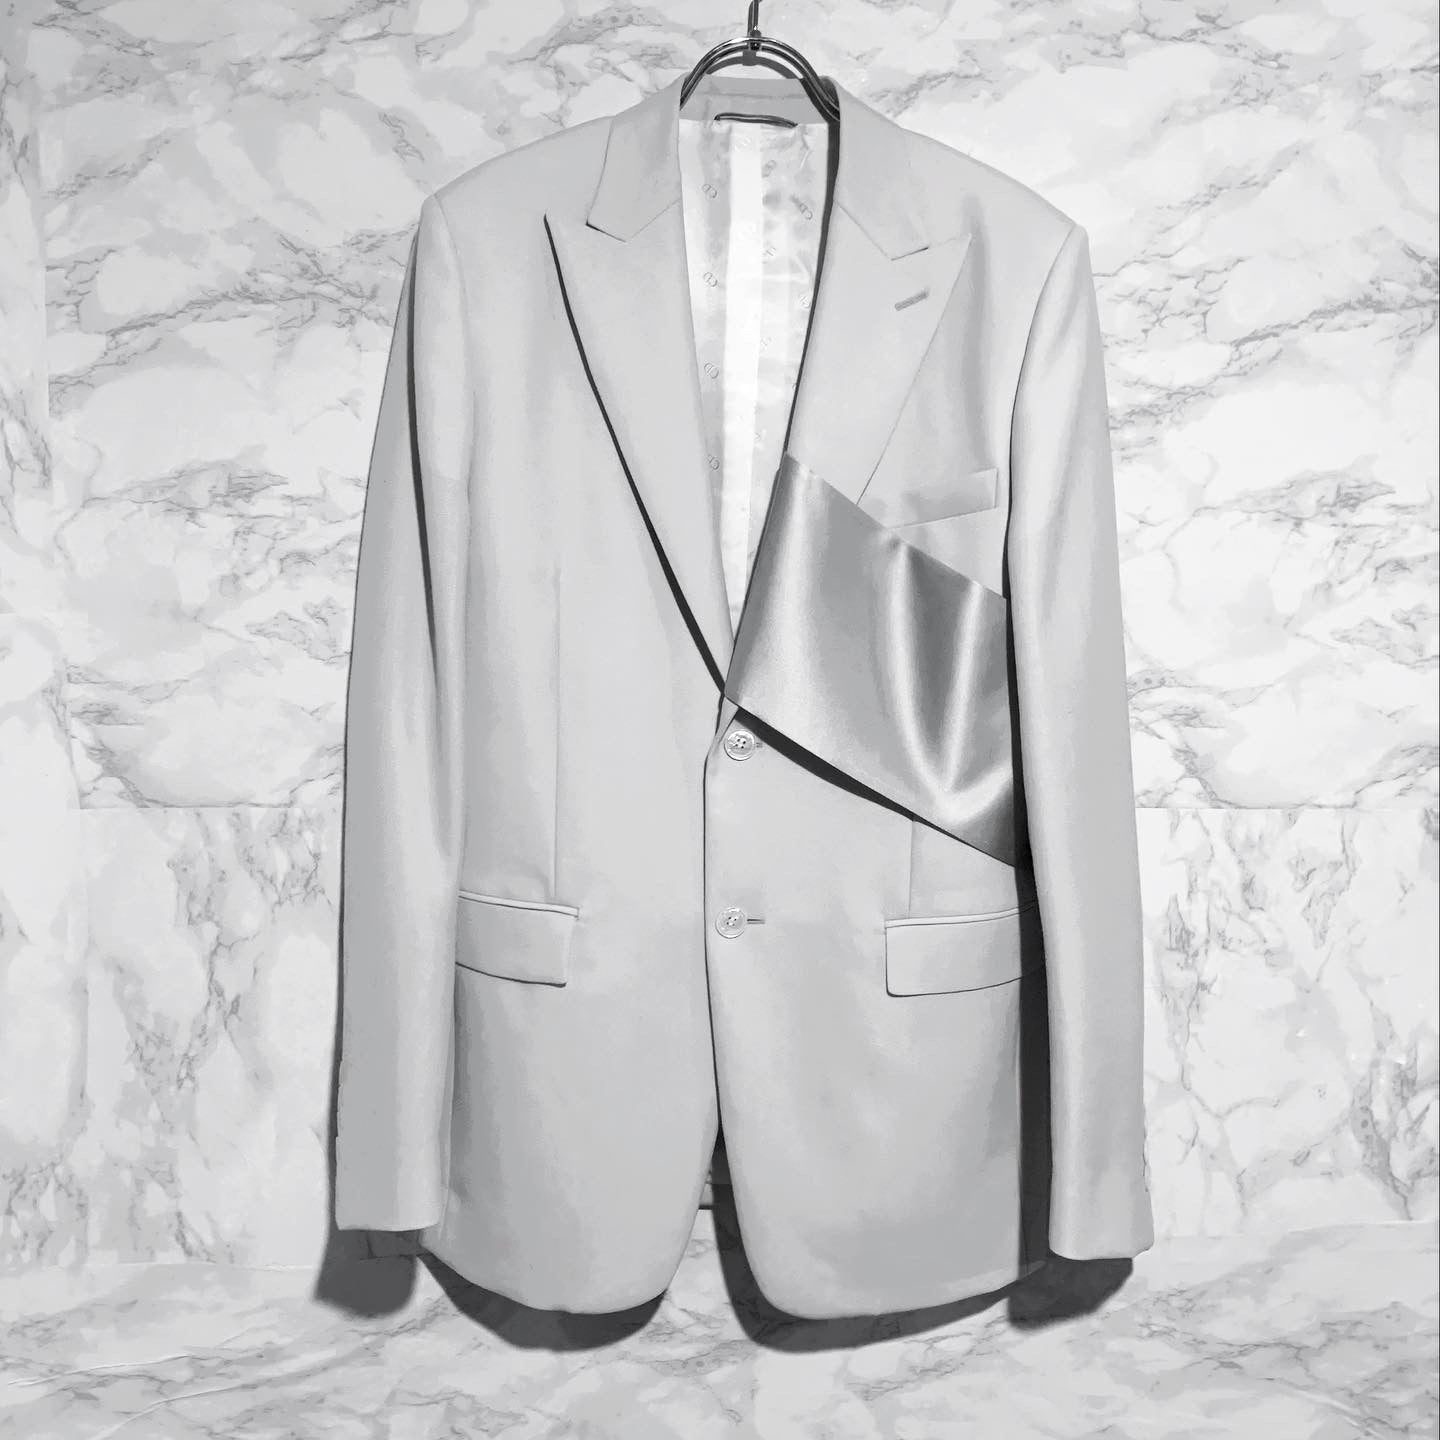 Christian Dior ストールジャケット - アウター